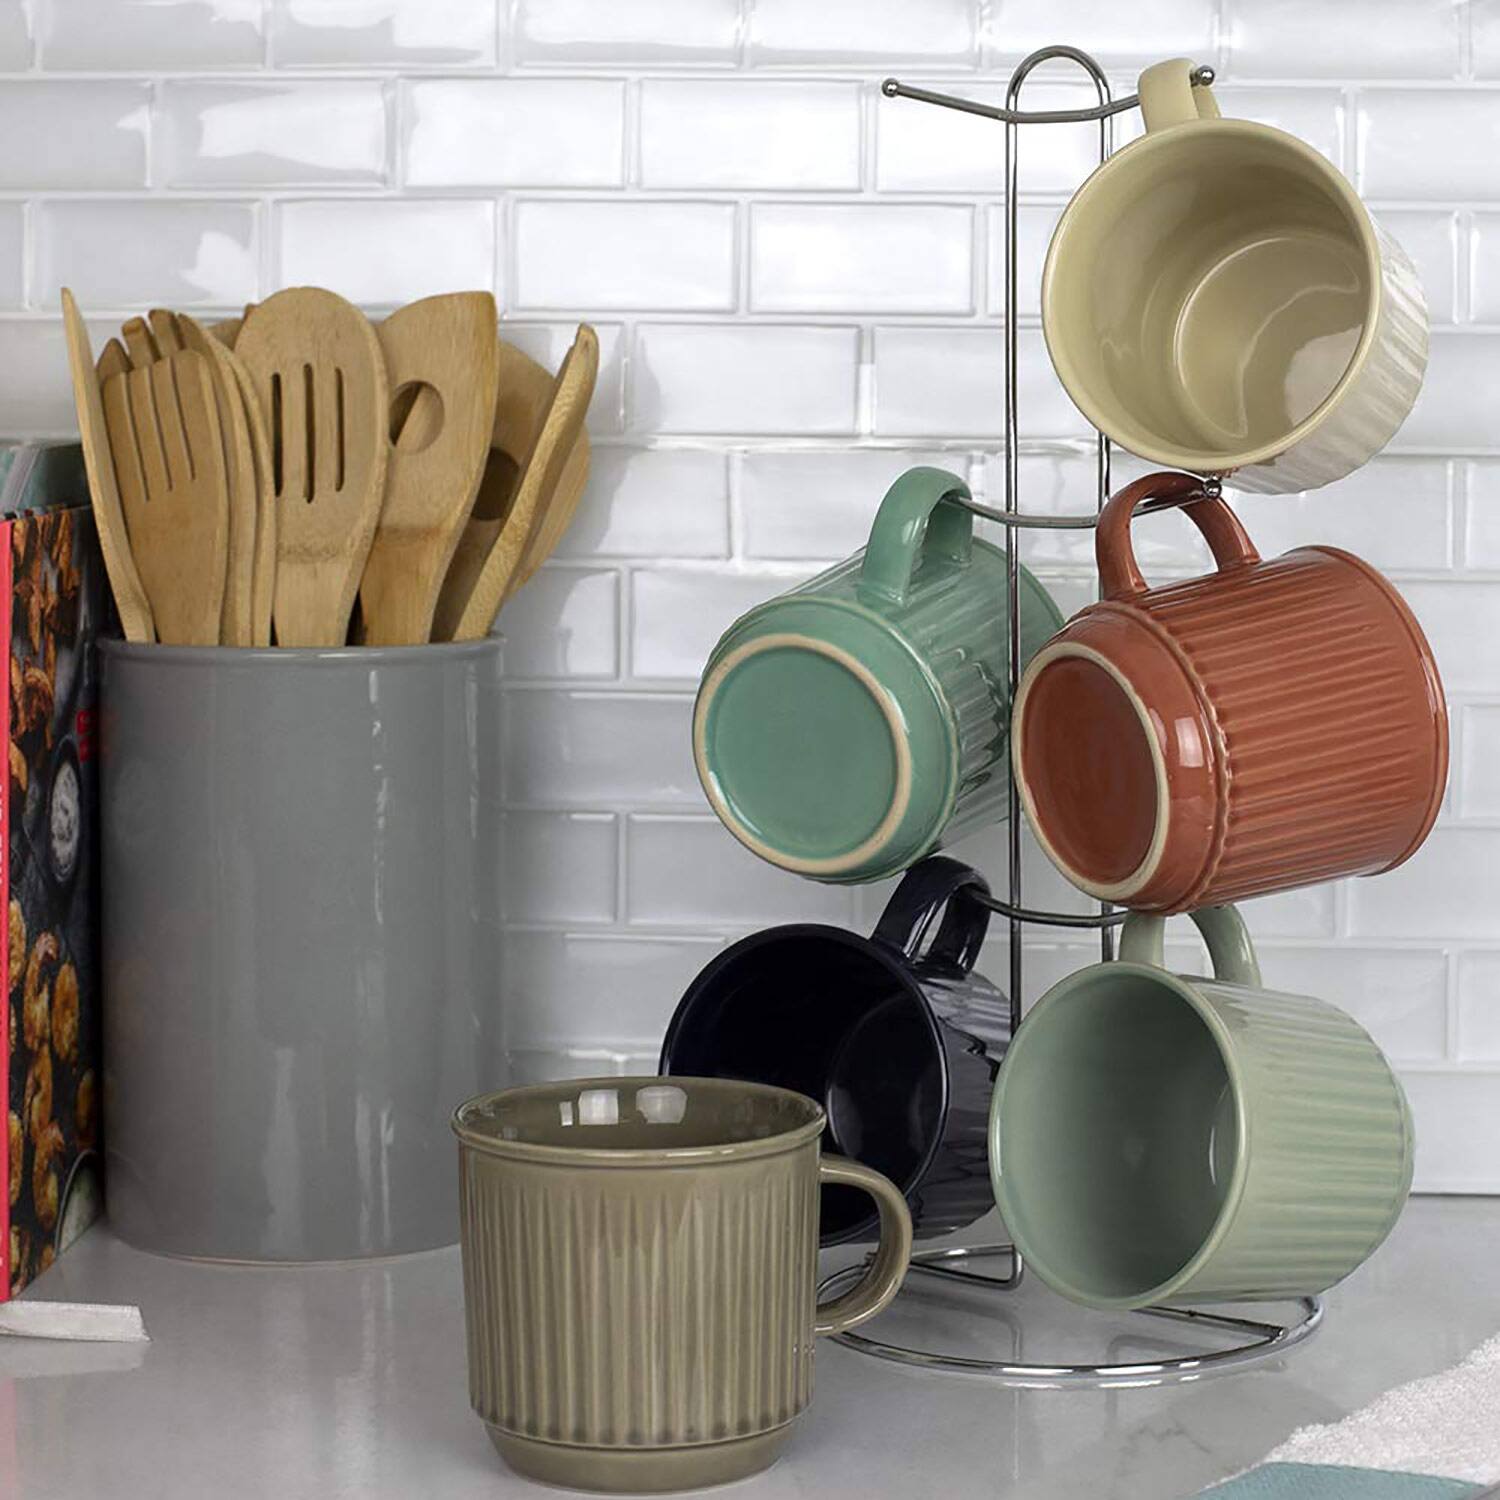 Home Basics 6-Piece Stoneware Mug Set with Chrome Stand, Multi, 11 Ounces